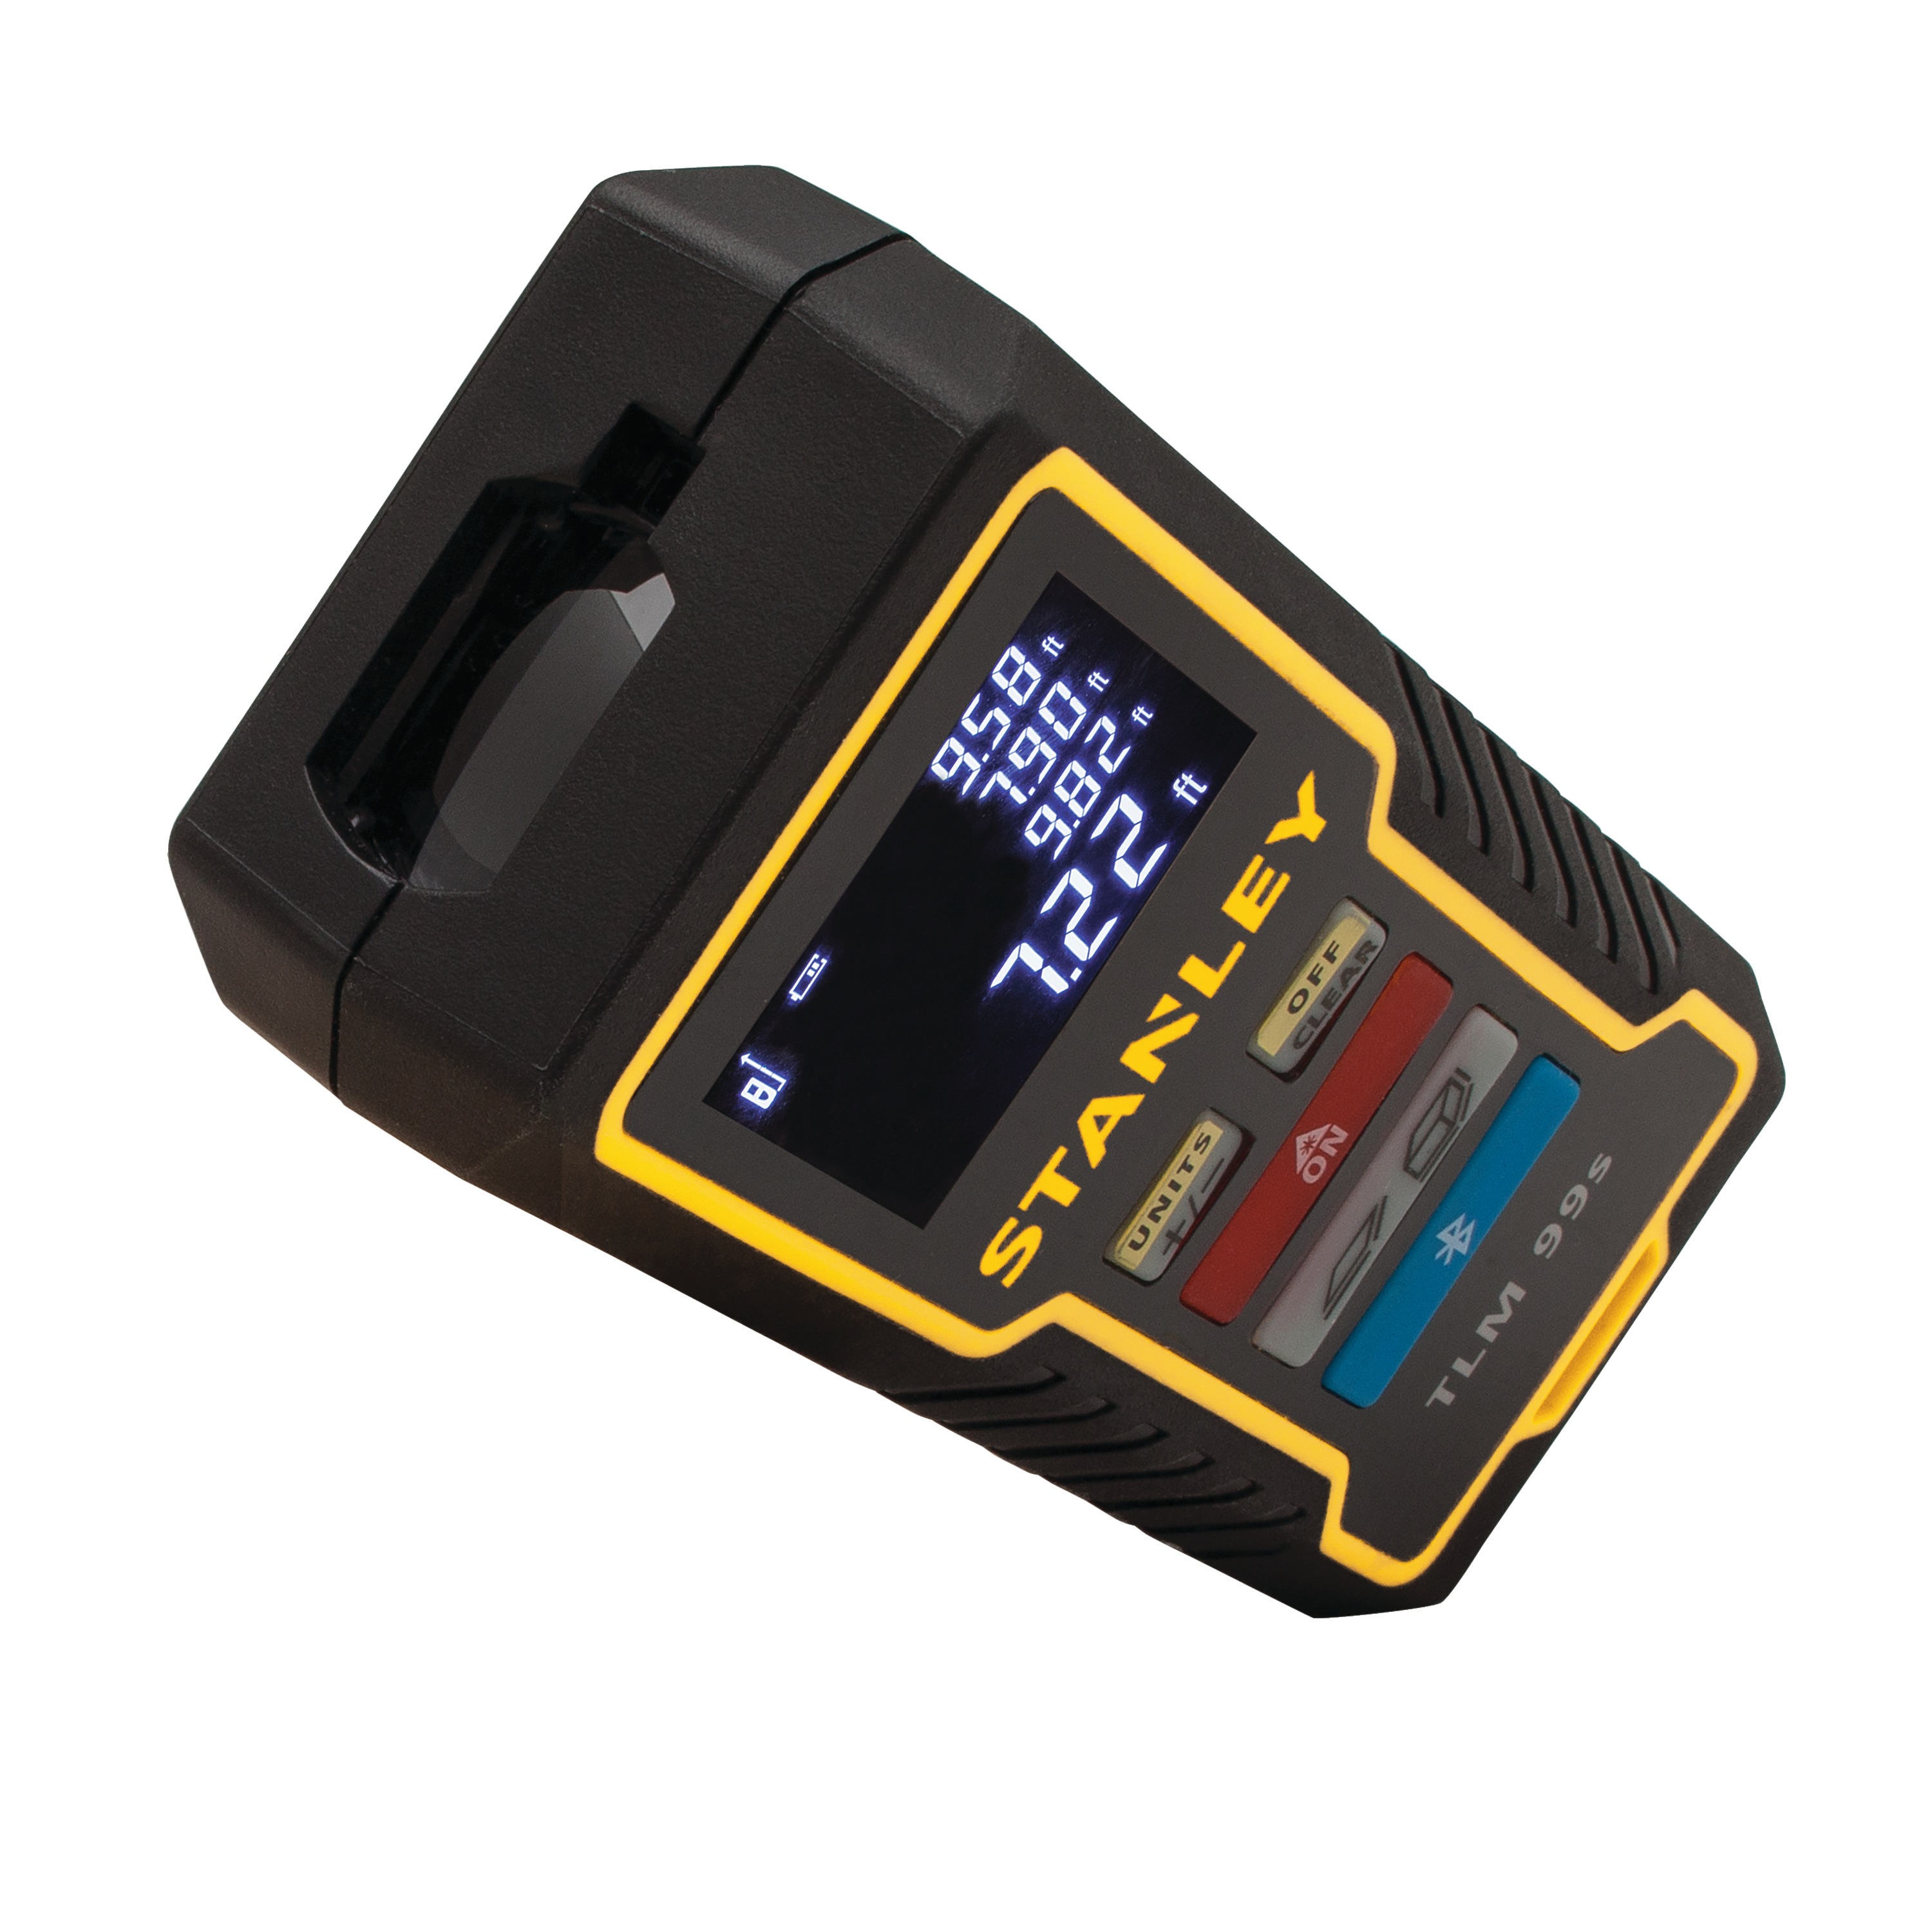 Stanley Tools - TLM99s BluetoothEnabled Laser Distance Measurer - STHT77511